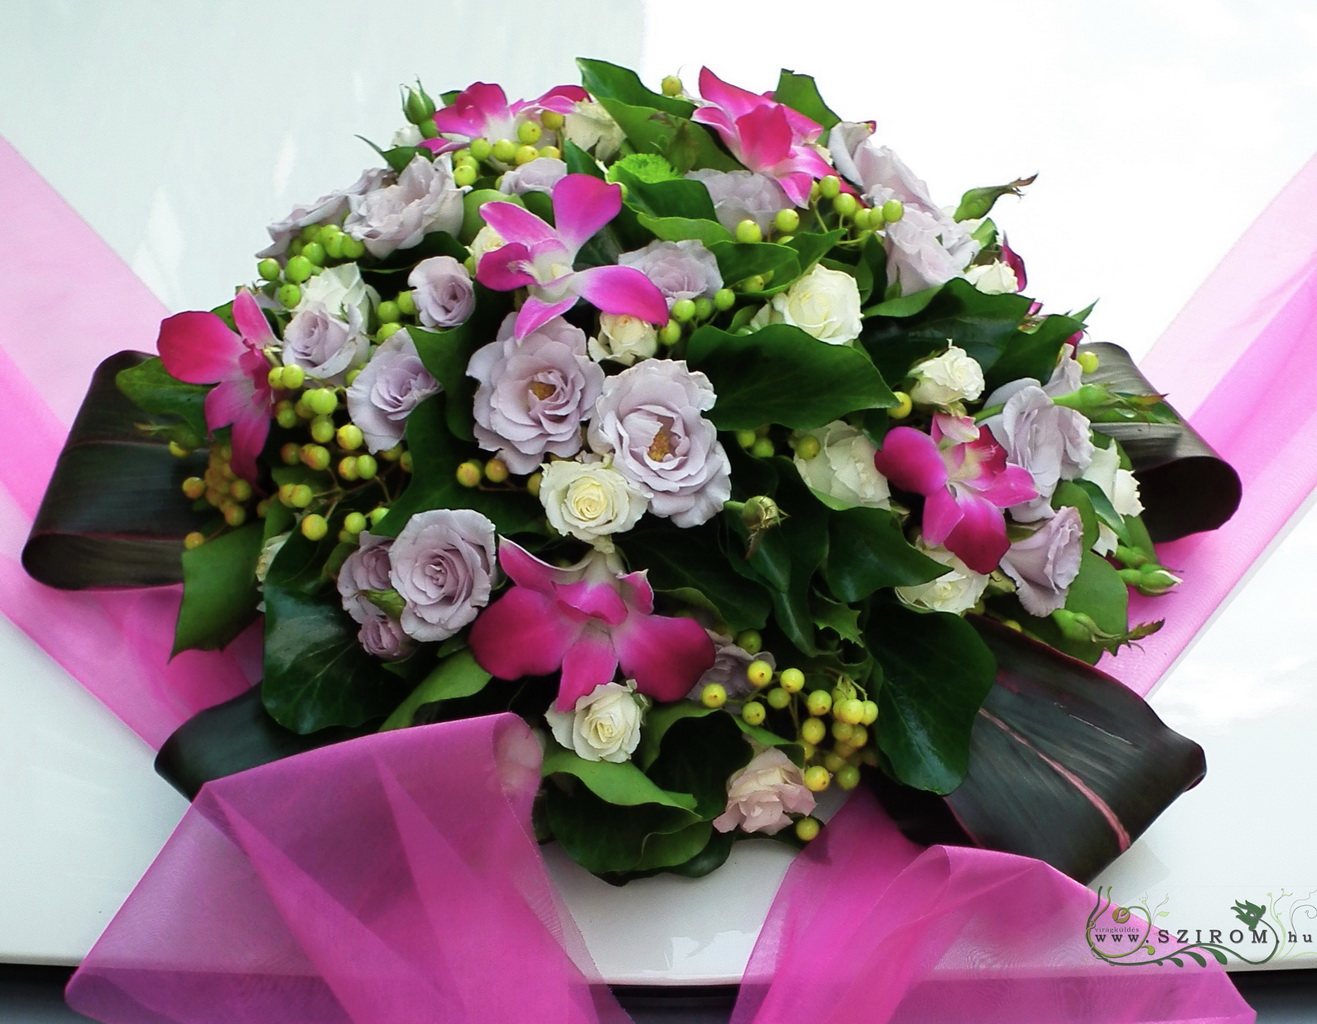 Virágküldés Budapest - kerek autódísz bokros rózsával és orchideával, organzával (lila, rózsaszín)